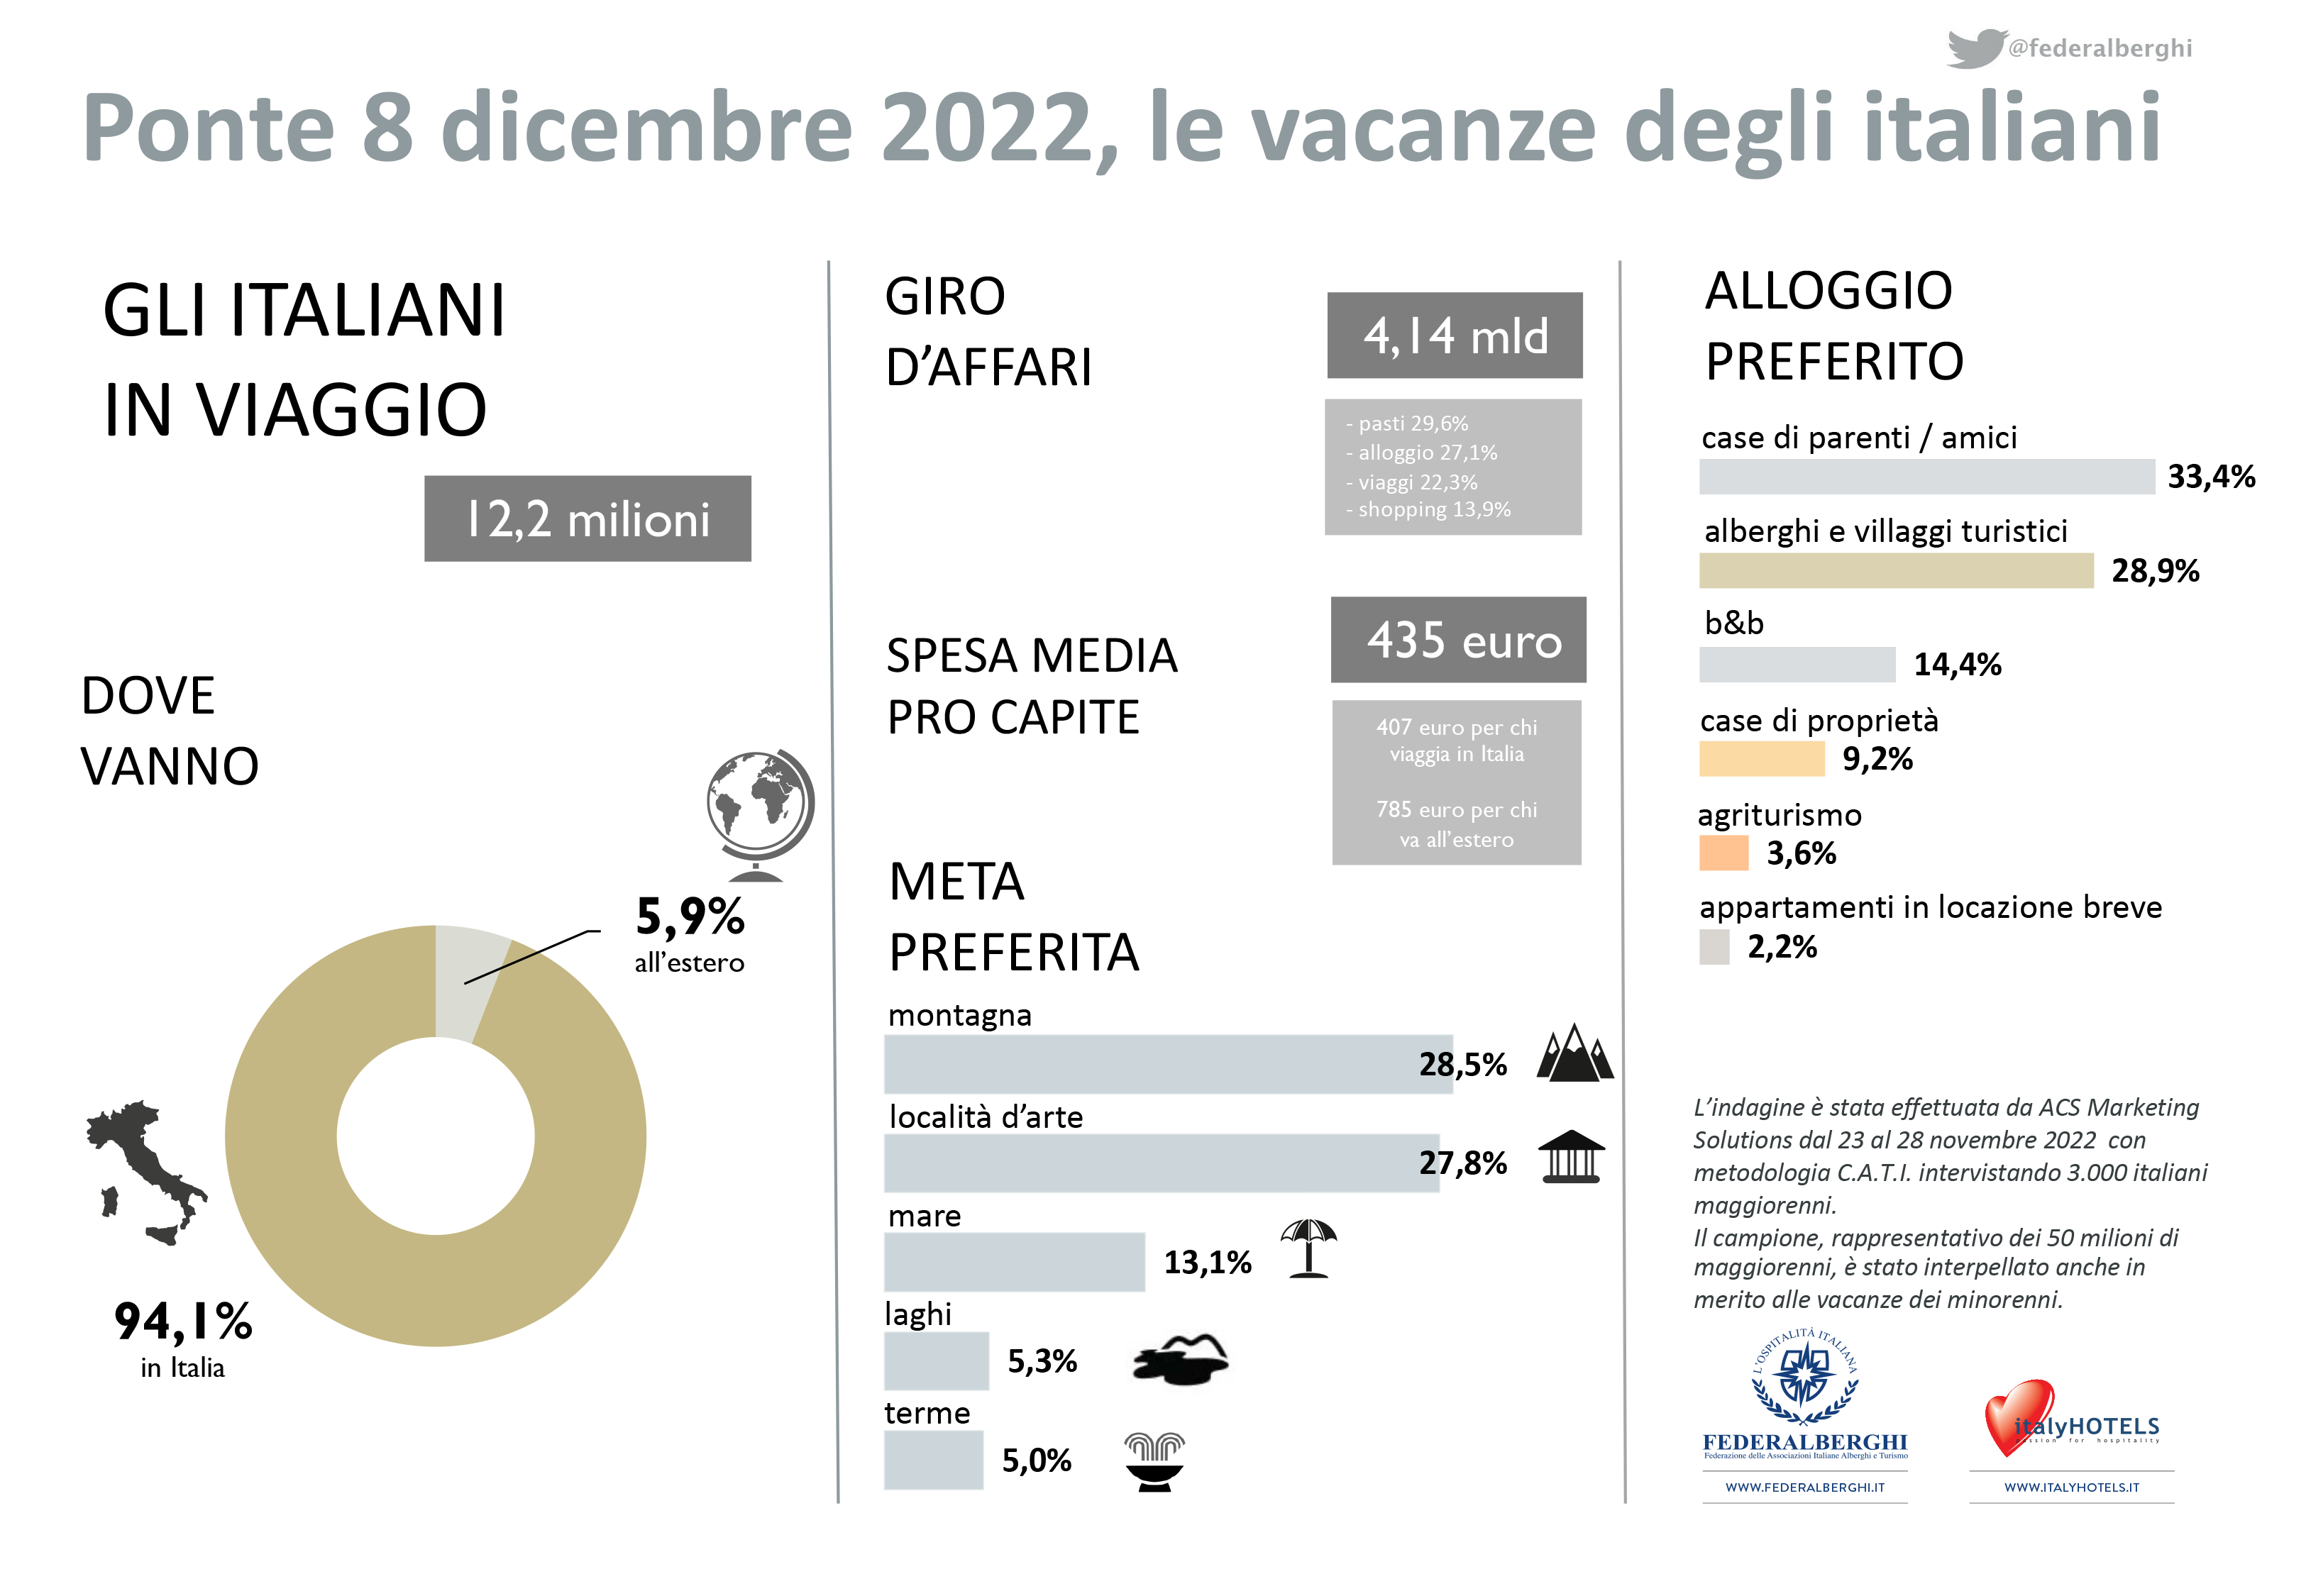 L’8 dicembre in vacanza 12 mln e 183mila italiani, oltre il 94% resta in ltalia